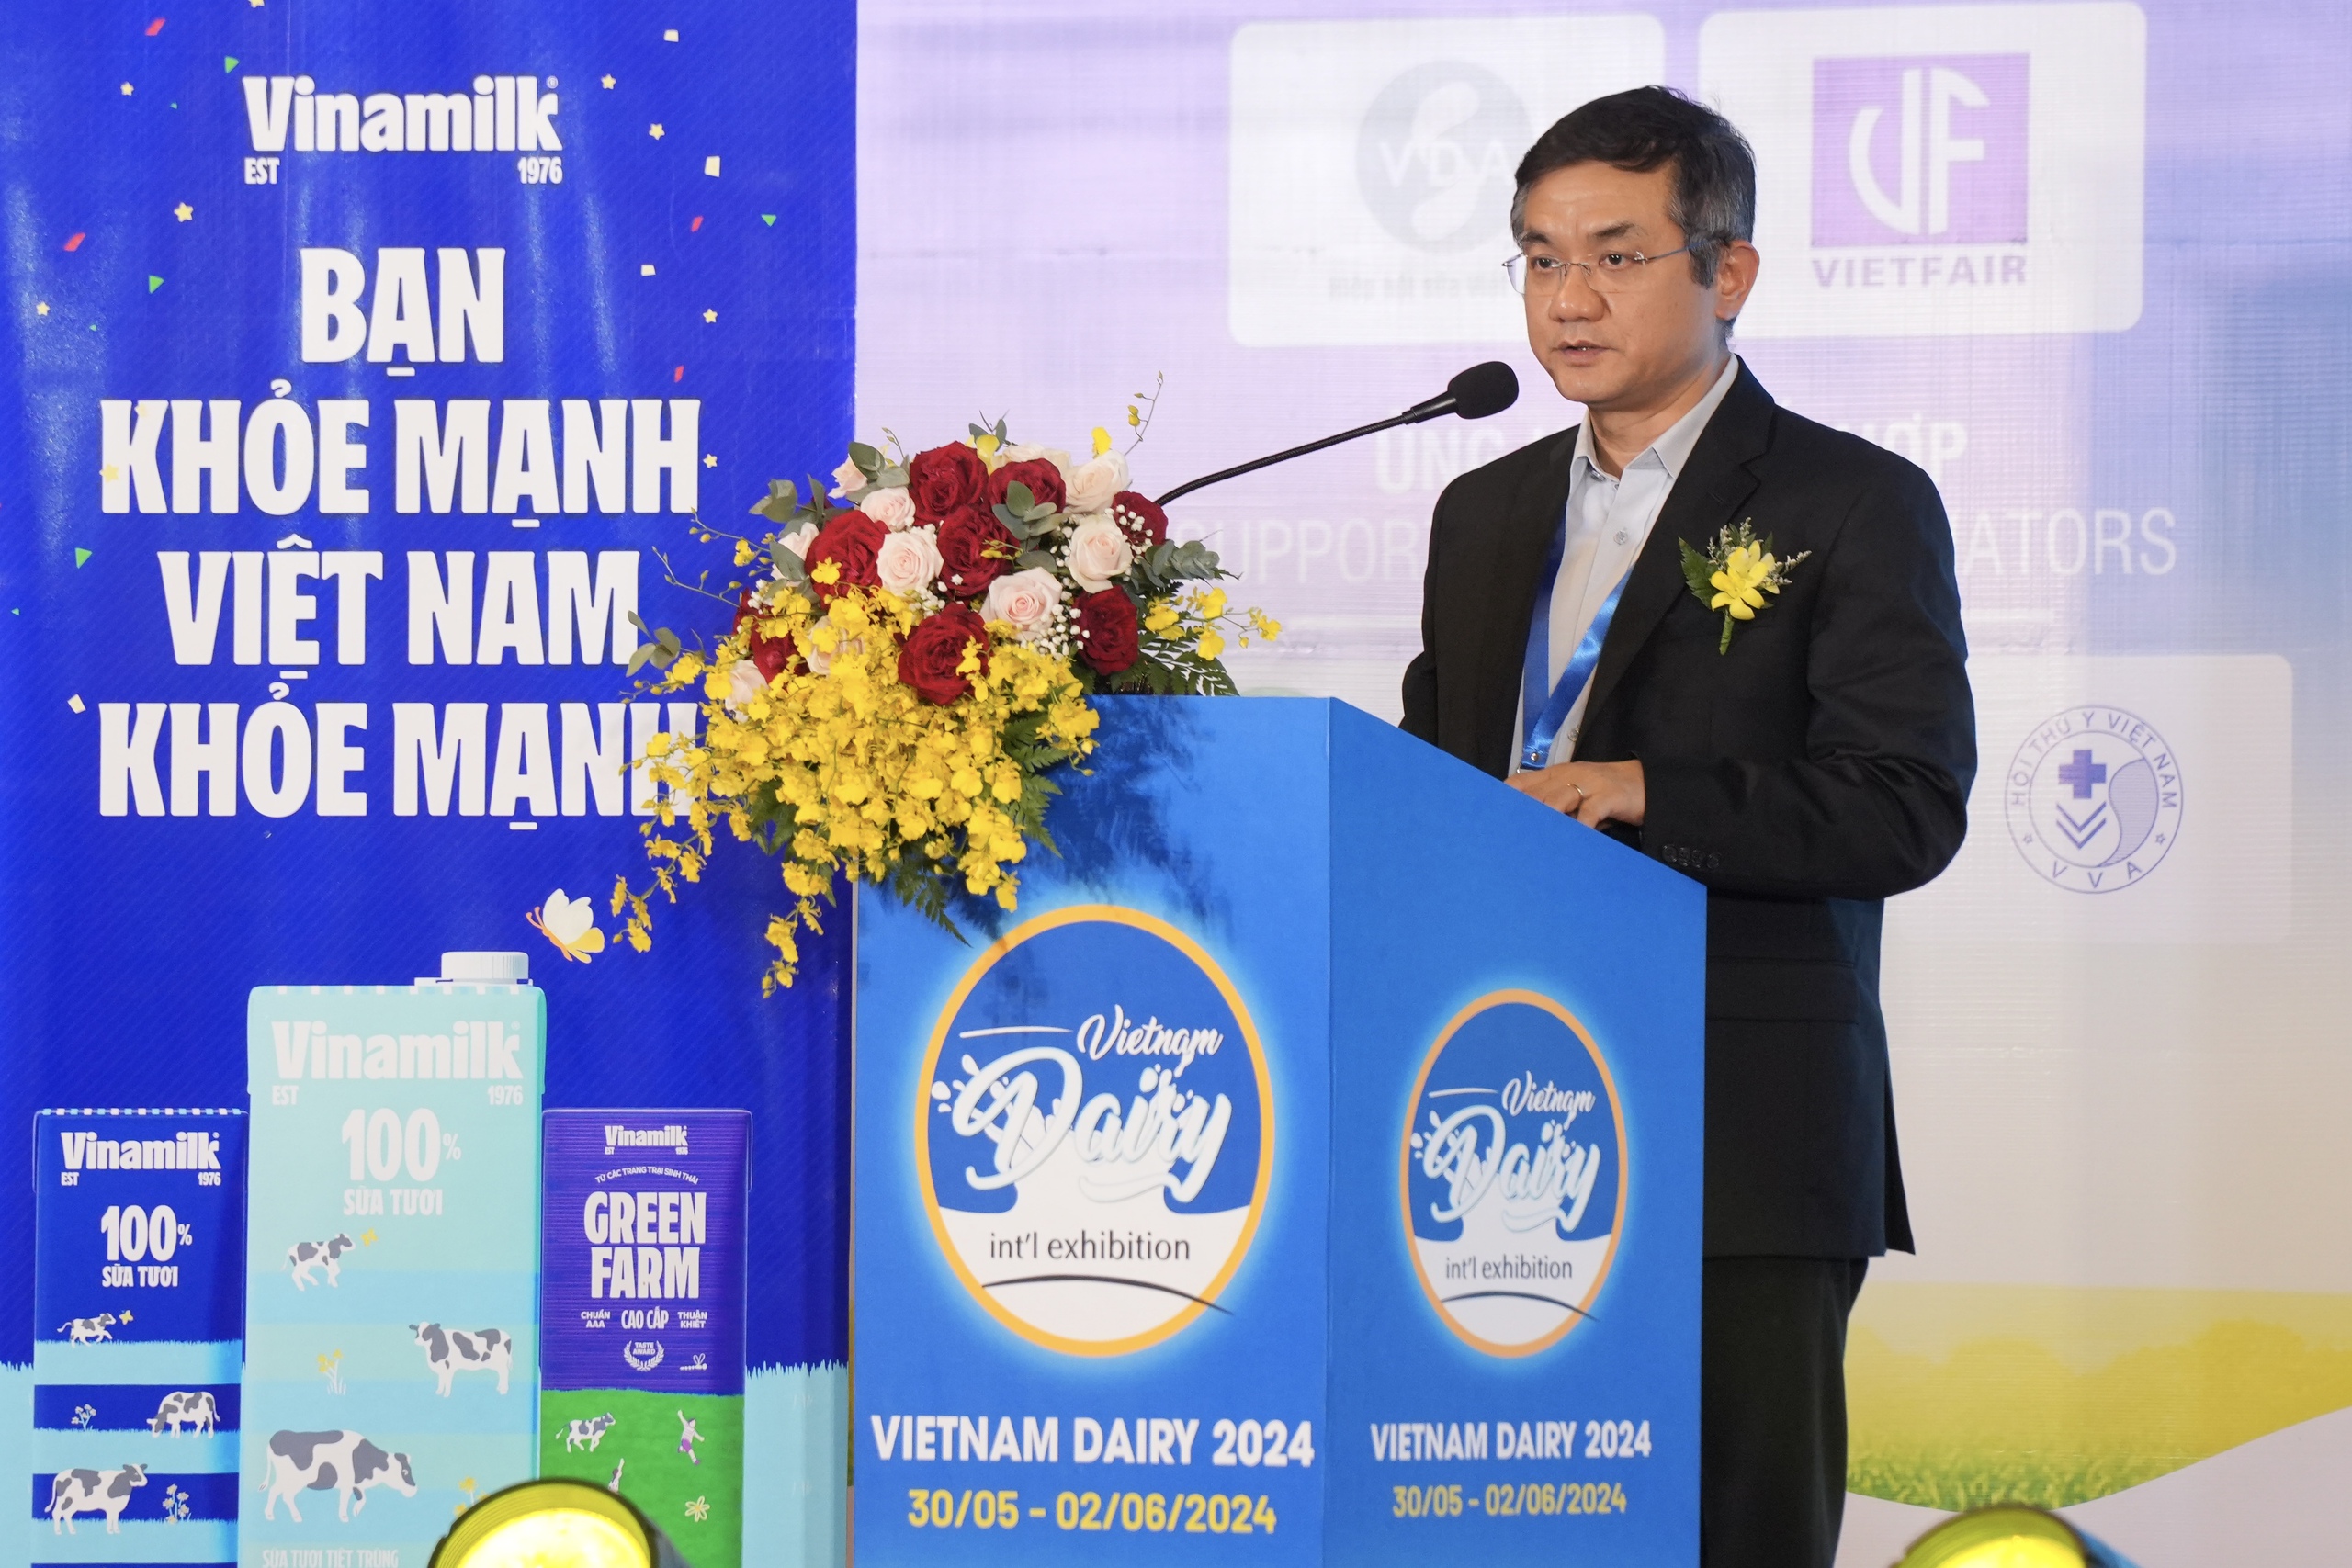 Sức hút của Vinamilk tại triển lãm quốc tế chuyên ngành sữa- Ảnh 1.